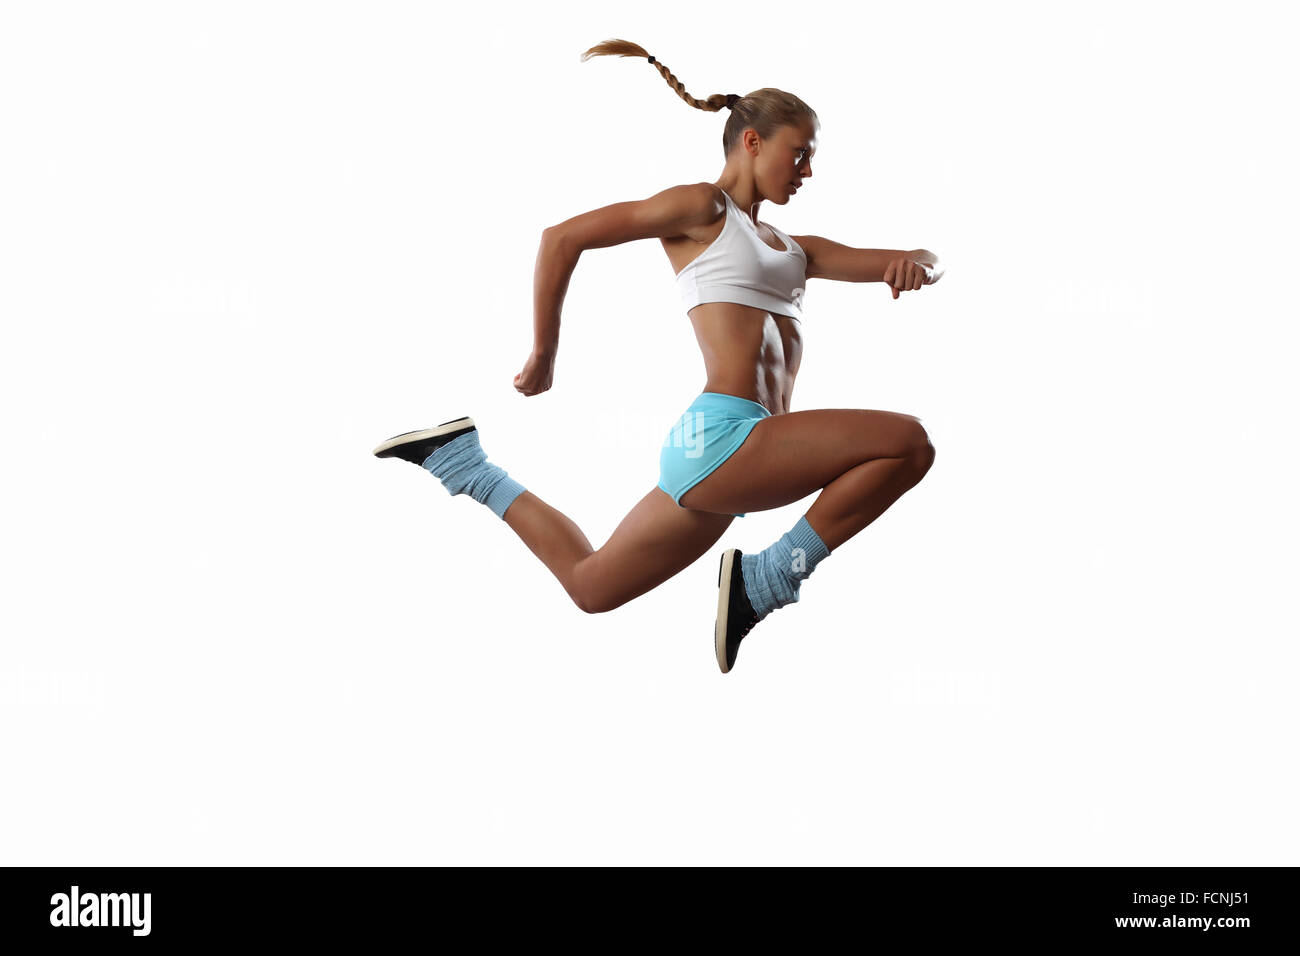 Bild von Sport Mädchen im Sprung vor weißem Hintergrund Stockfoto